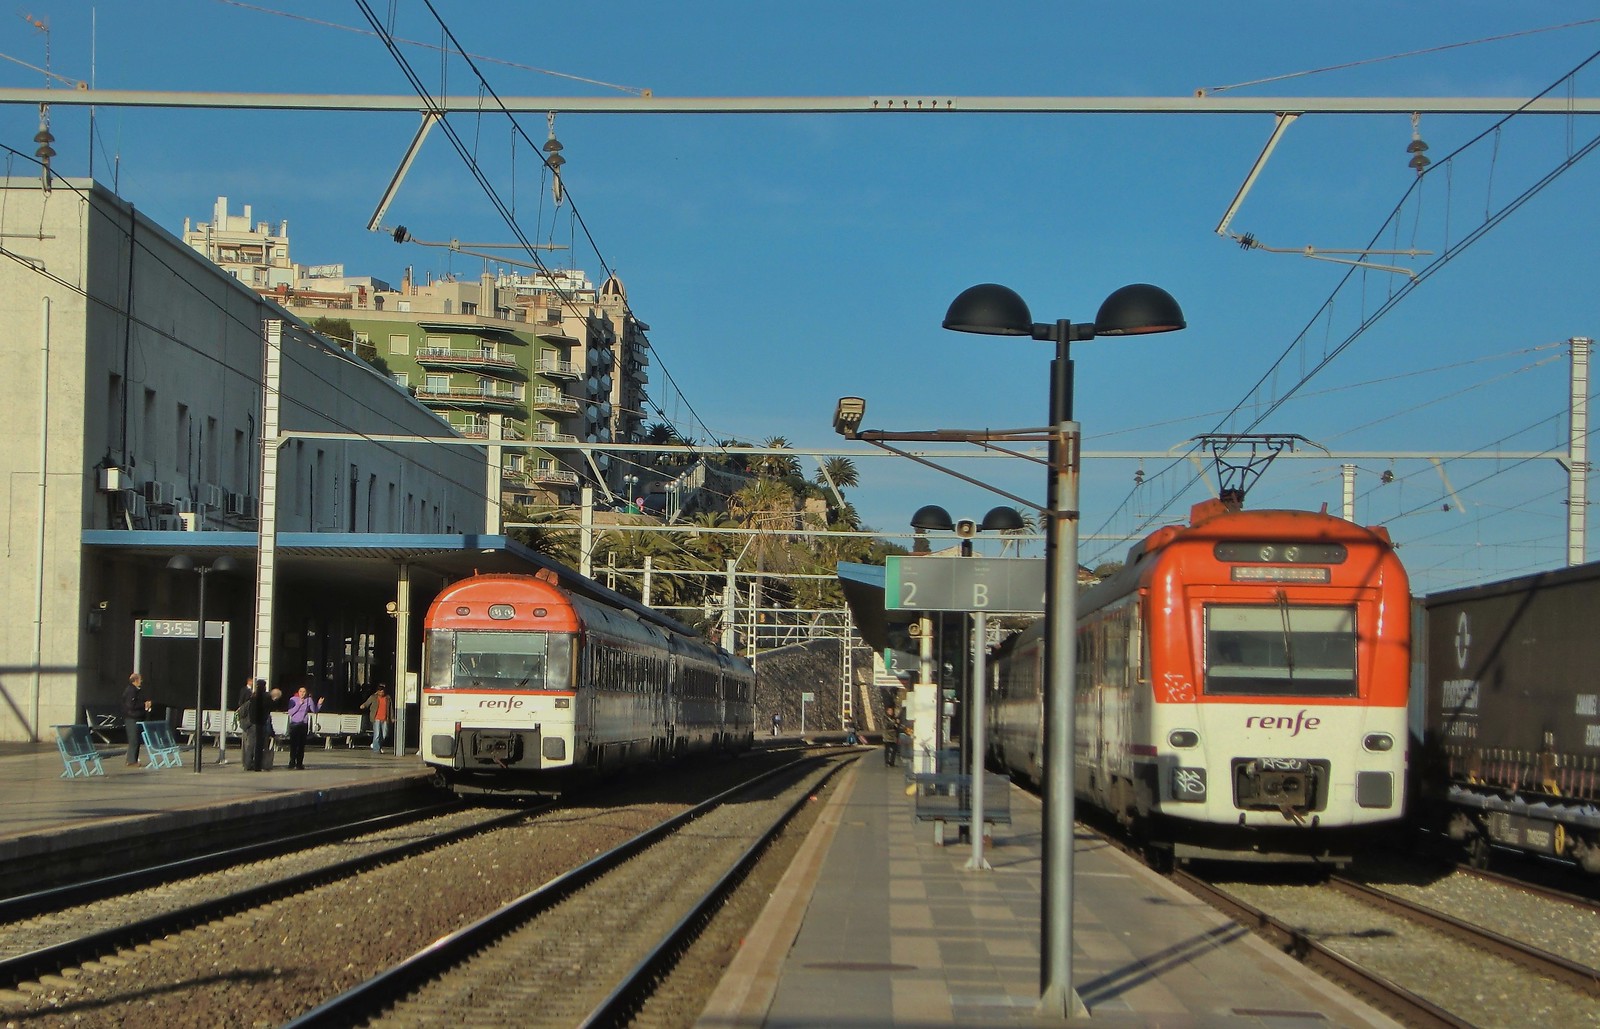 Hace ahora 5 años en la estación de Tarragona...